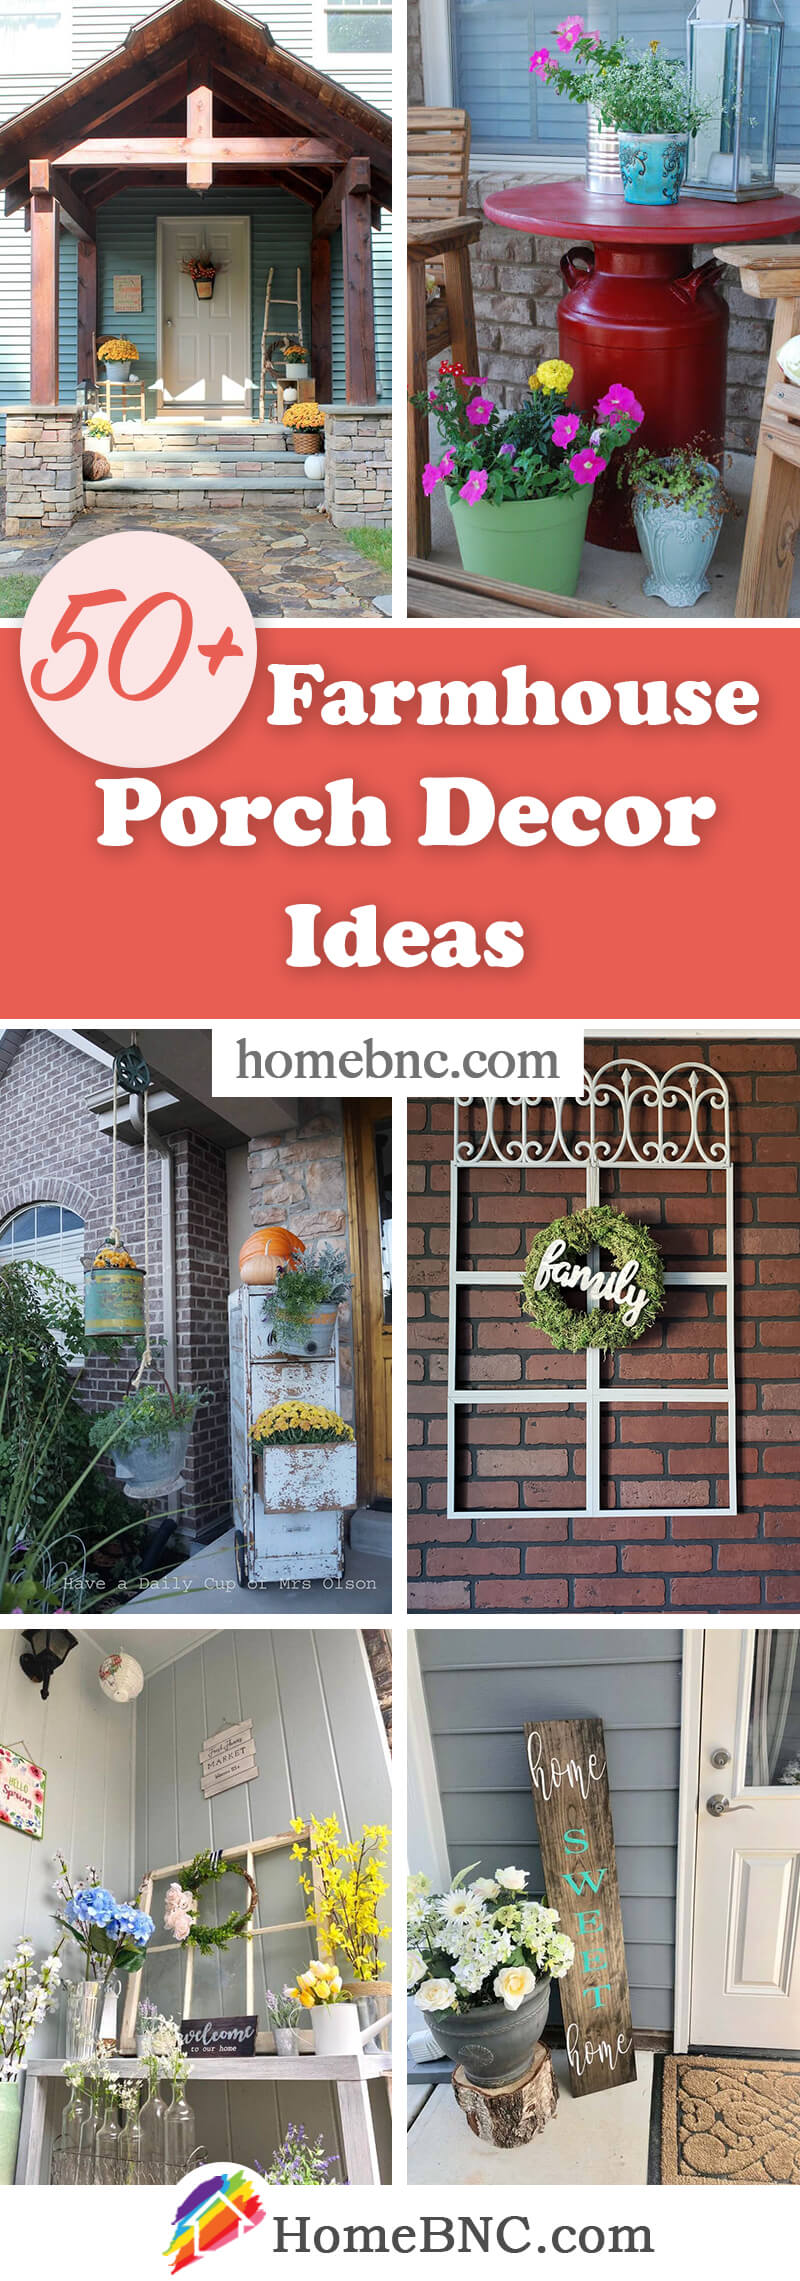 rustic-farmhouse-porch-decor-ideas-pinterest-share-end-homebnc-v2 — Homebnc